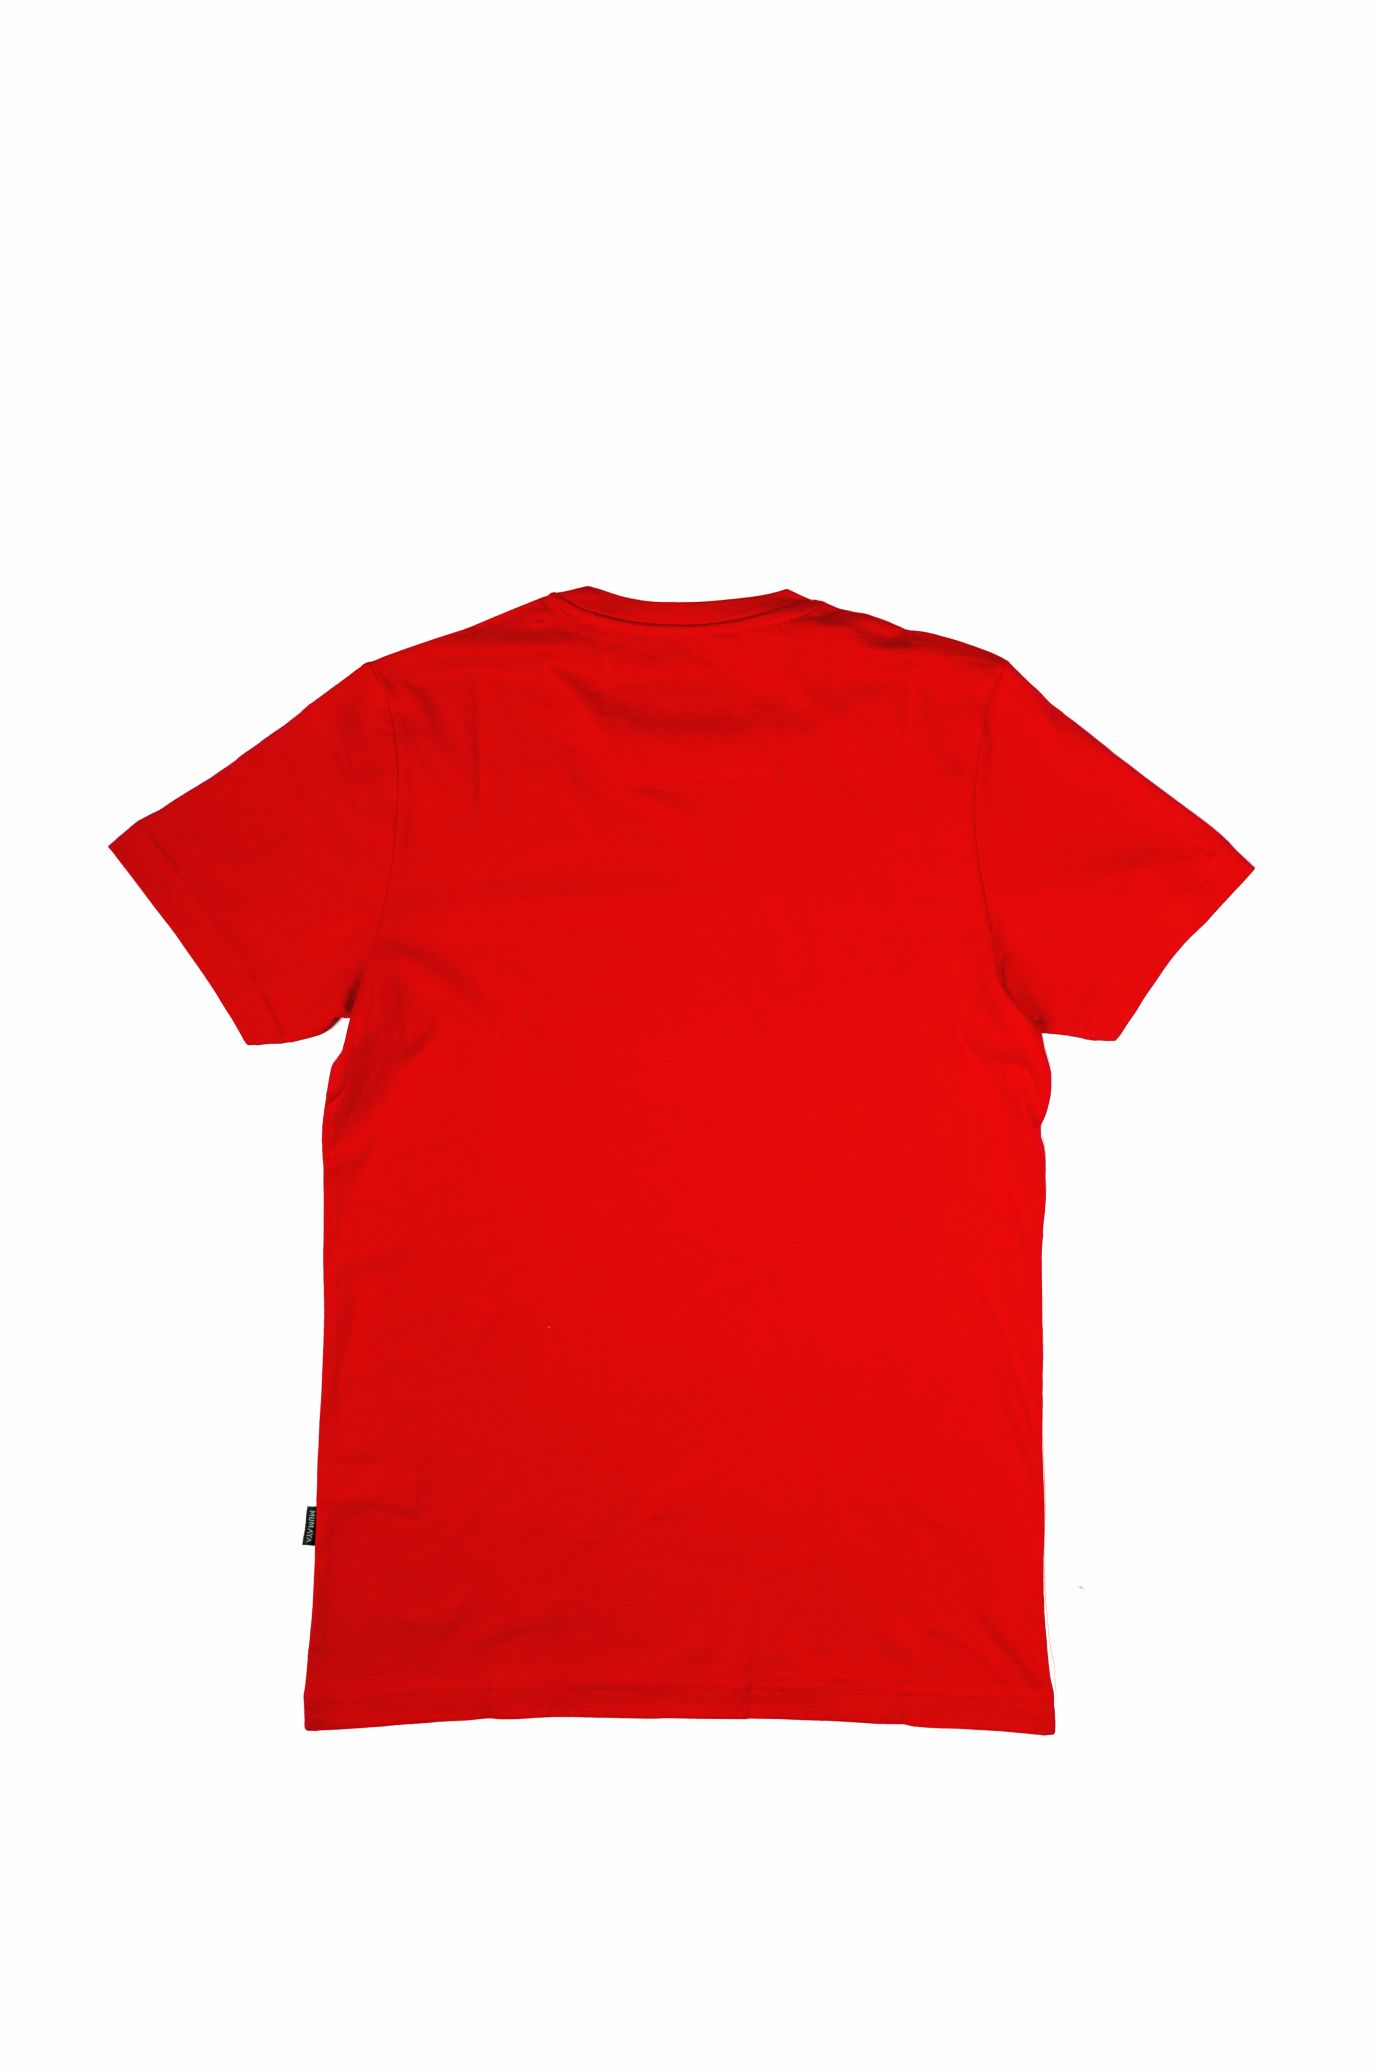 Mumaya BaselineShirt Red